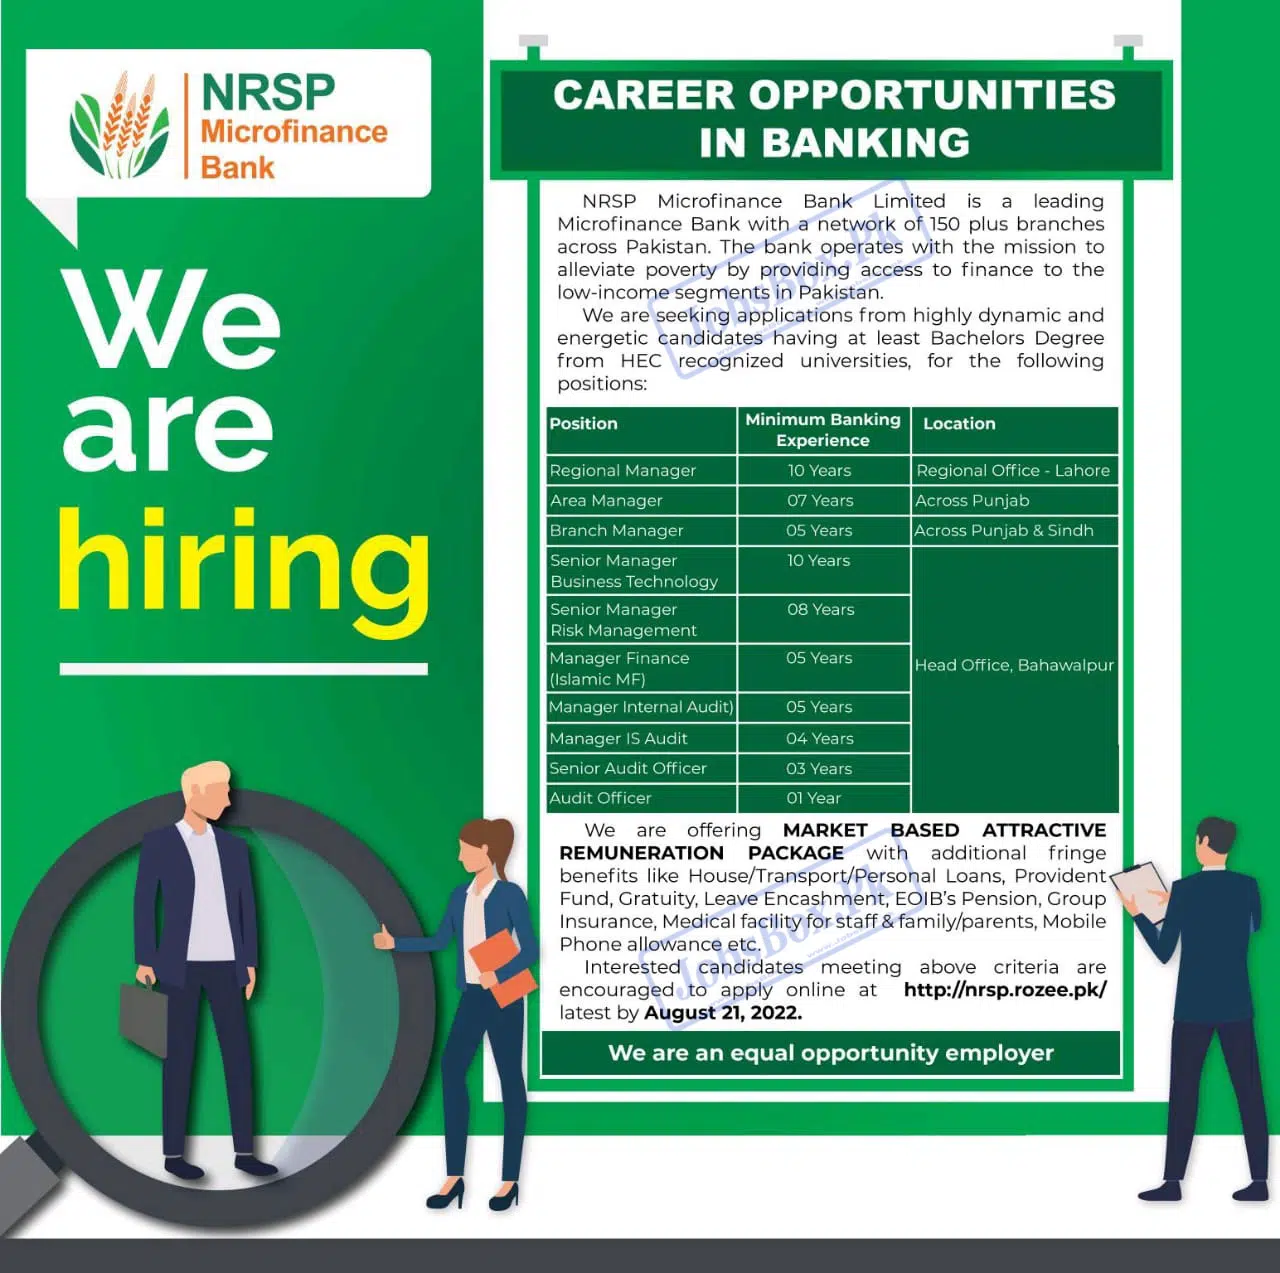 New Banking Jobs at NRSP Microfinance Bank in Punjab & Sindh